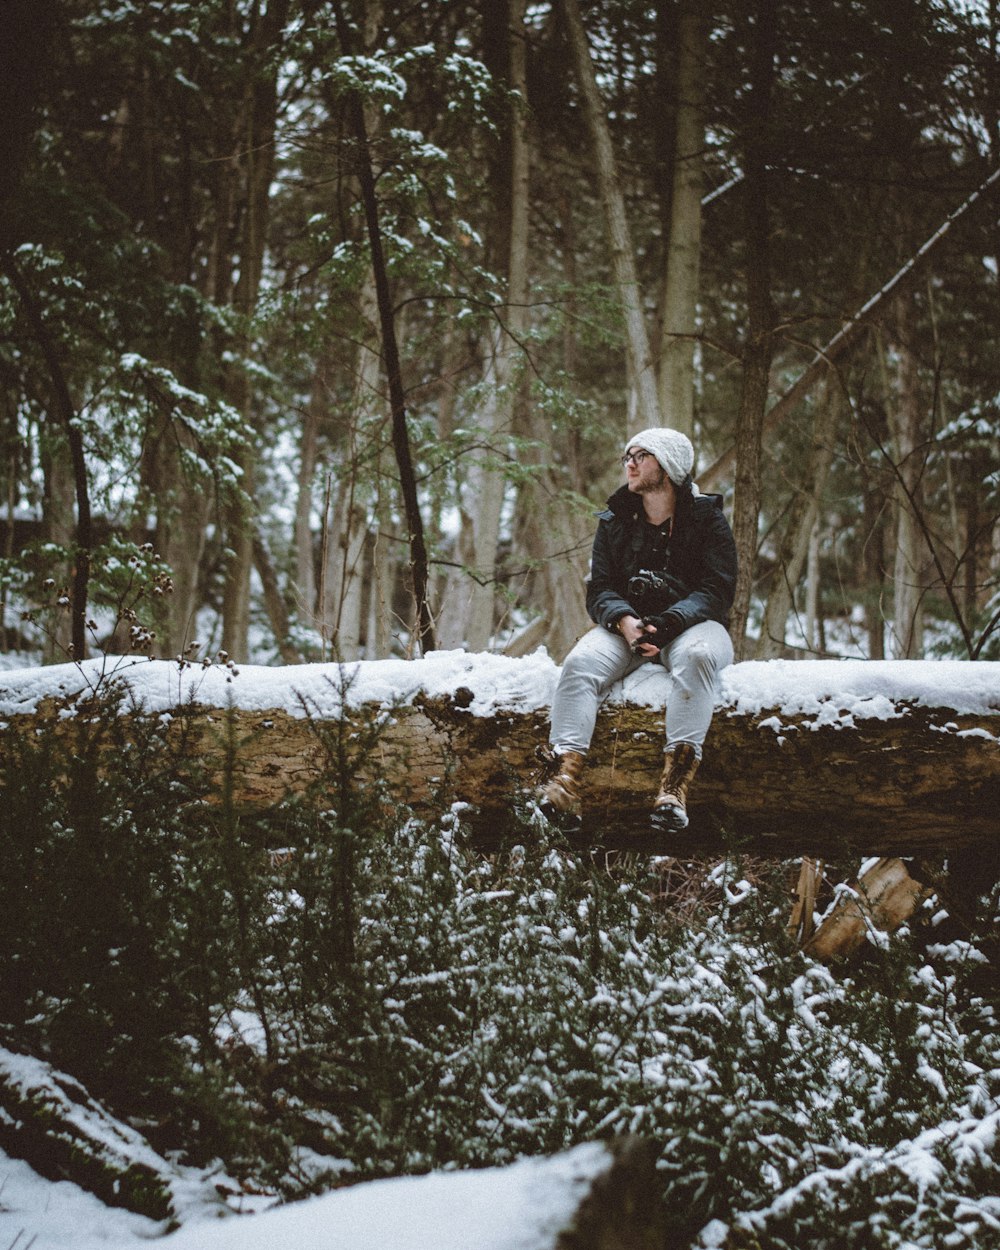 uomo che indossa un berretto a maglia bianca e una giacca nera che si siede su un tronco d'albero coperto di neve